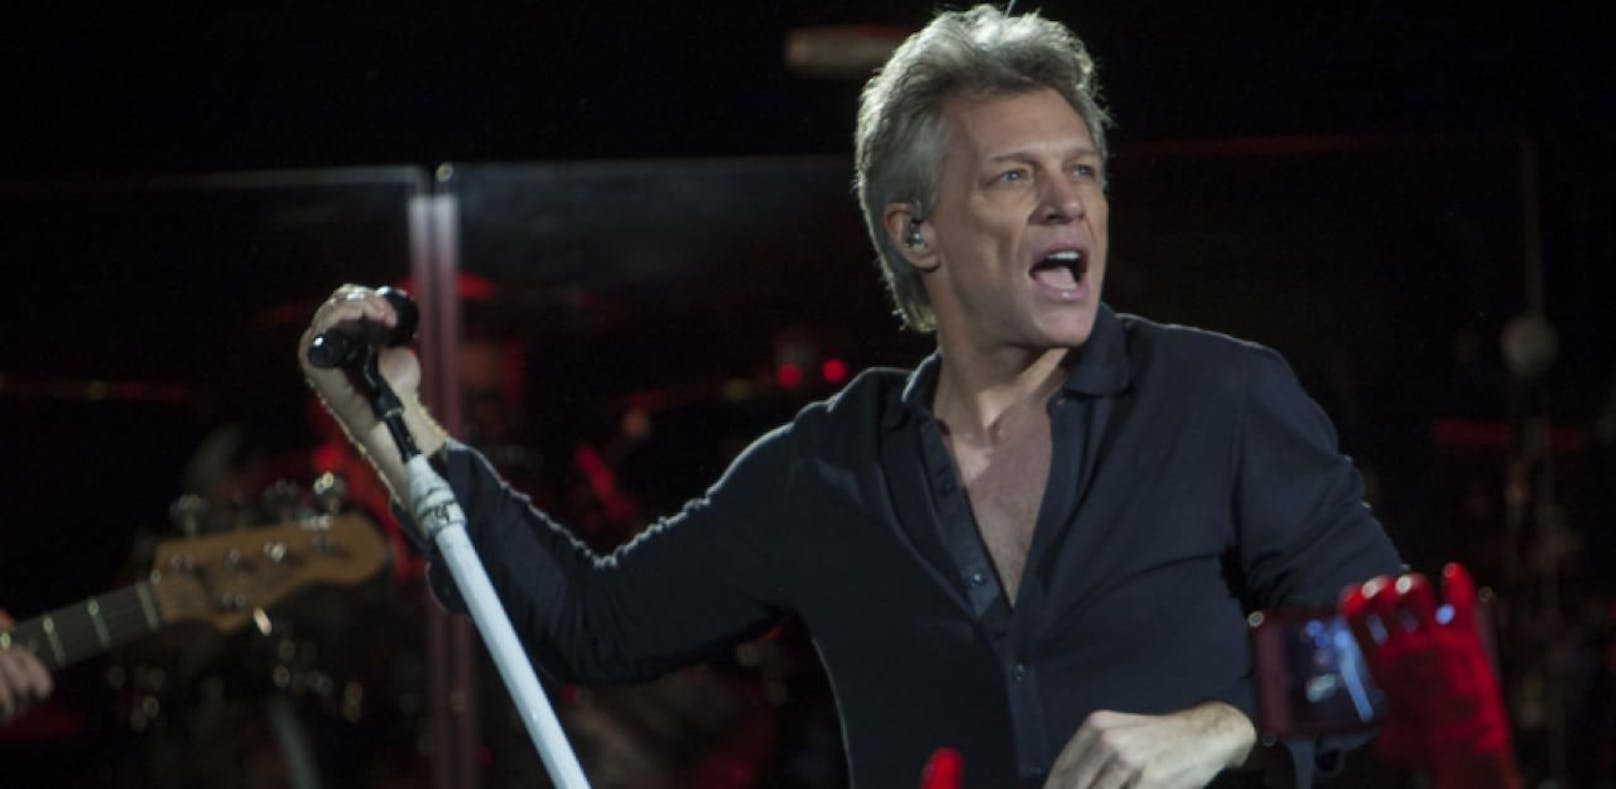 Bon Jovi brach Konzert ab, weil er "sche**e" sang